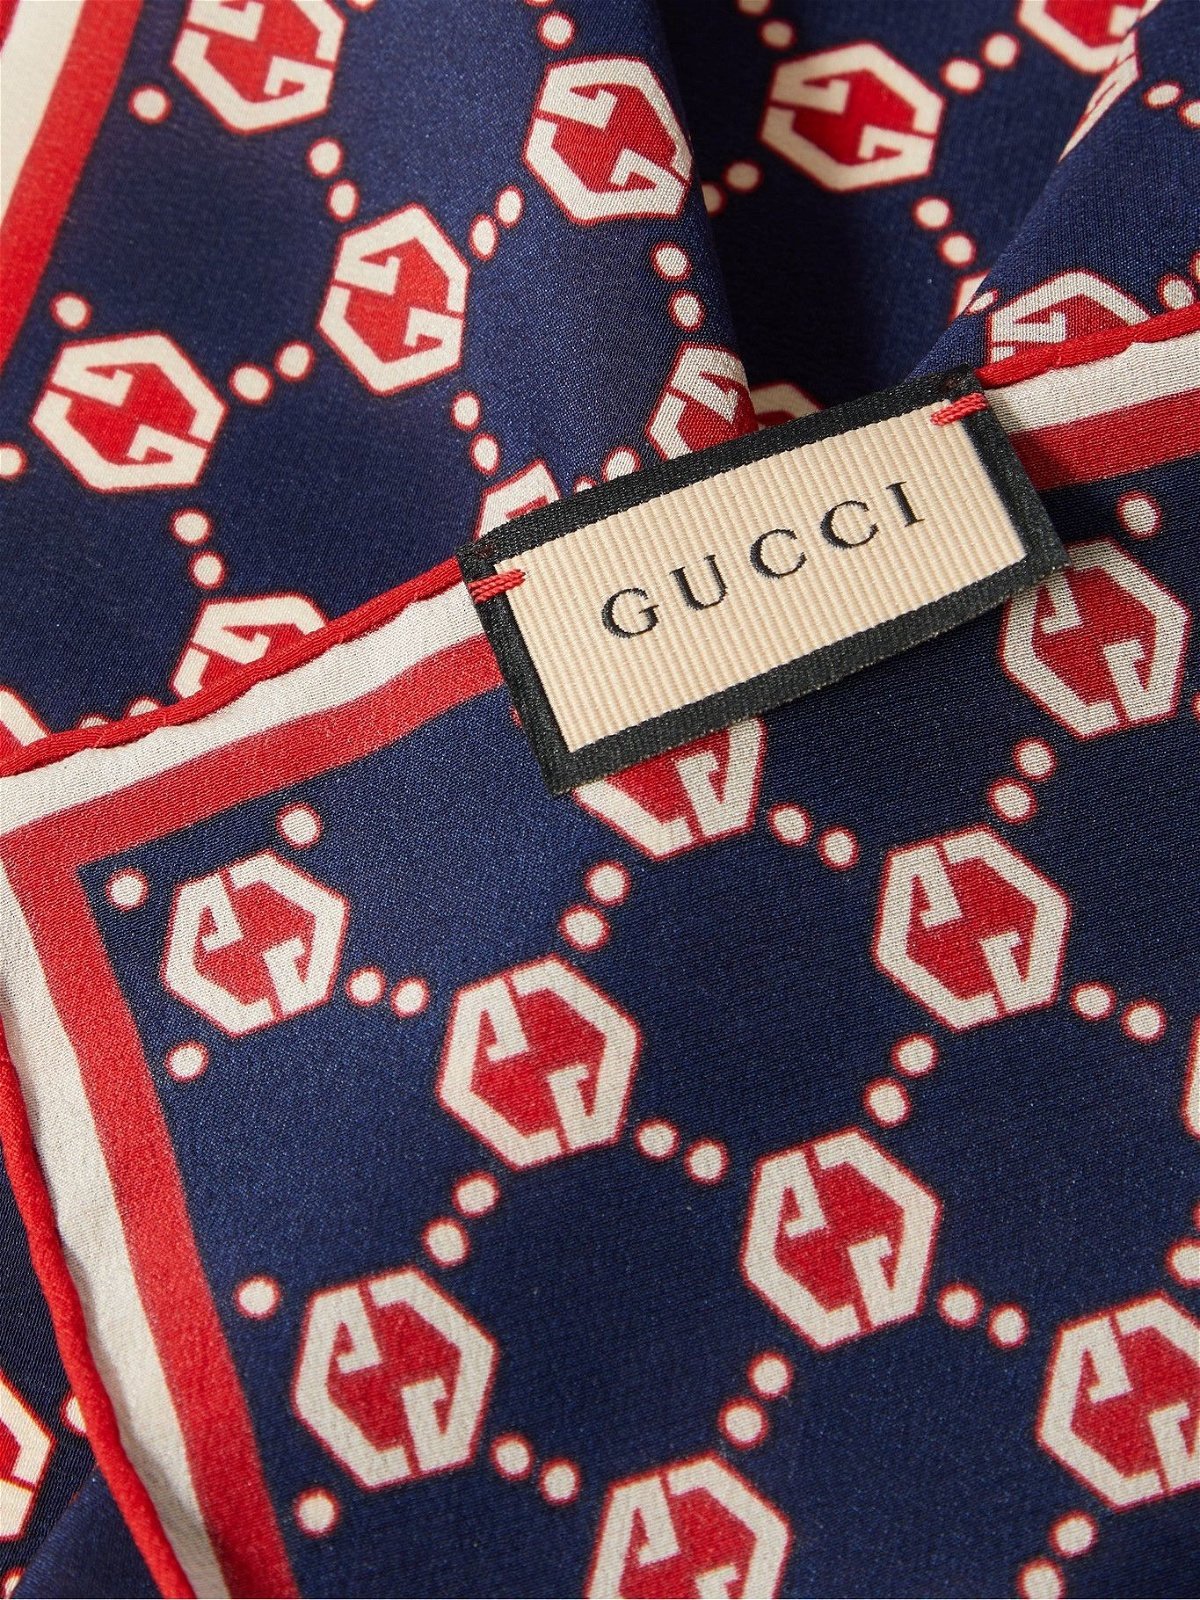 Gucci Silk Pocket Square, $160, Gucci